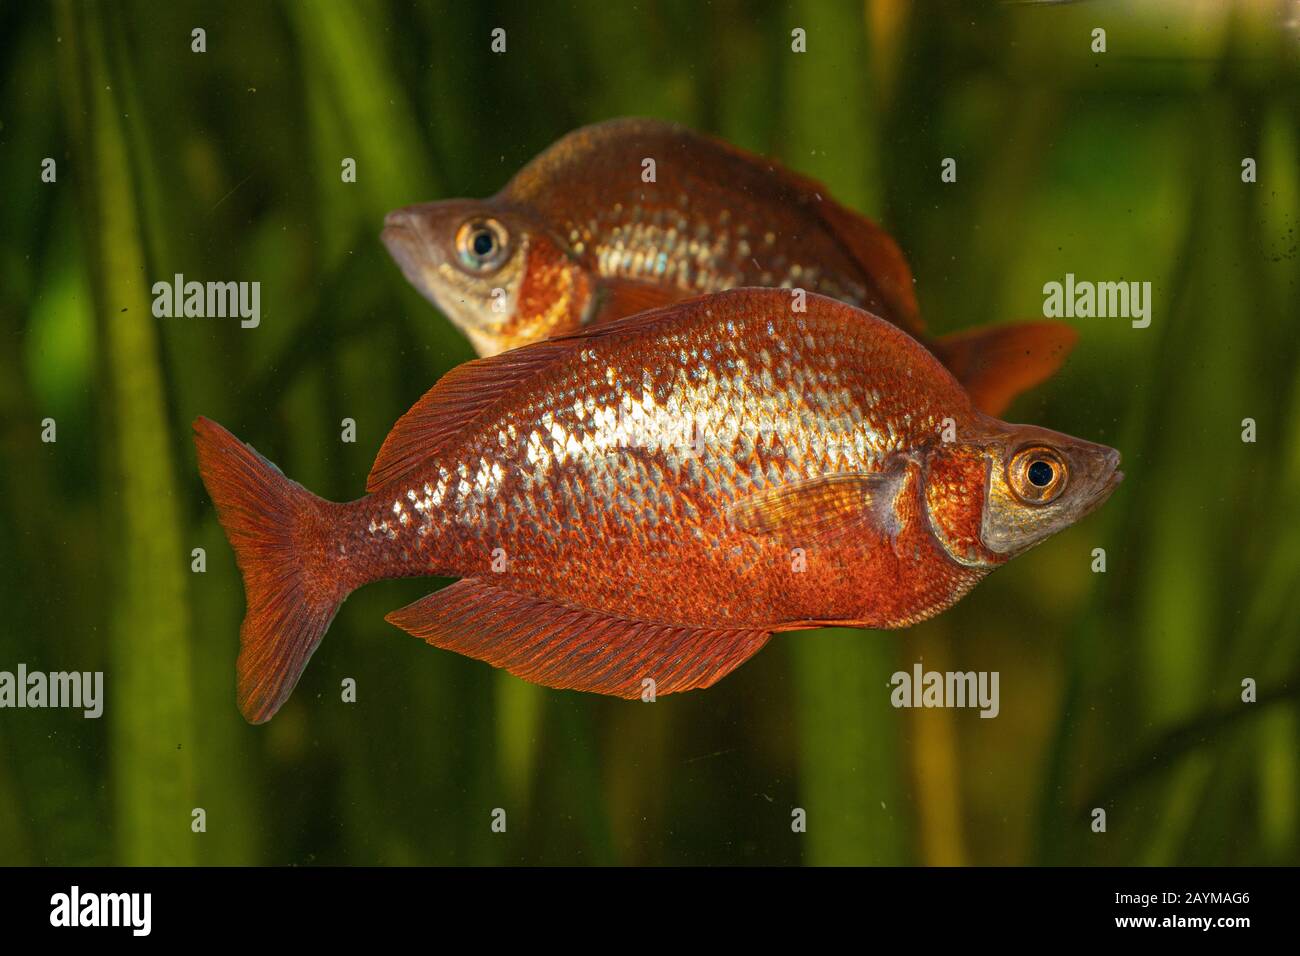 Red rainbowfish, Salmon-red rainbowfish, New Guinea Red Irian Rainbowfish (Glossolepis incisus), side view Stock Photo